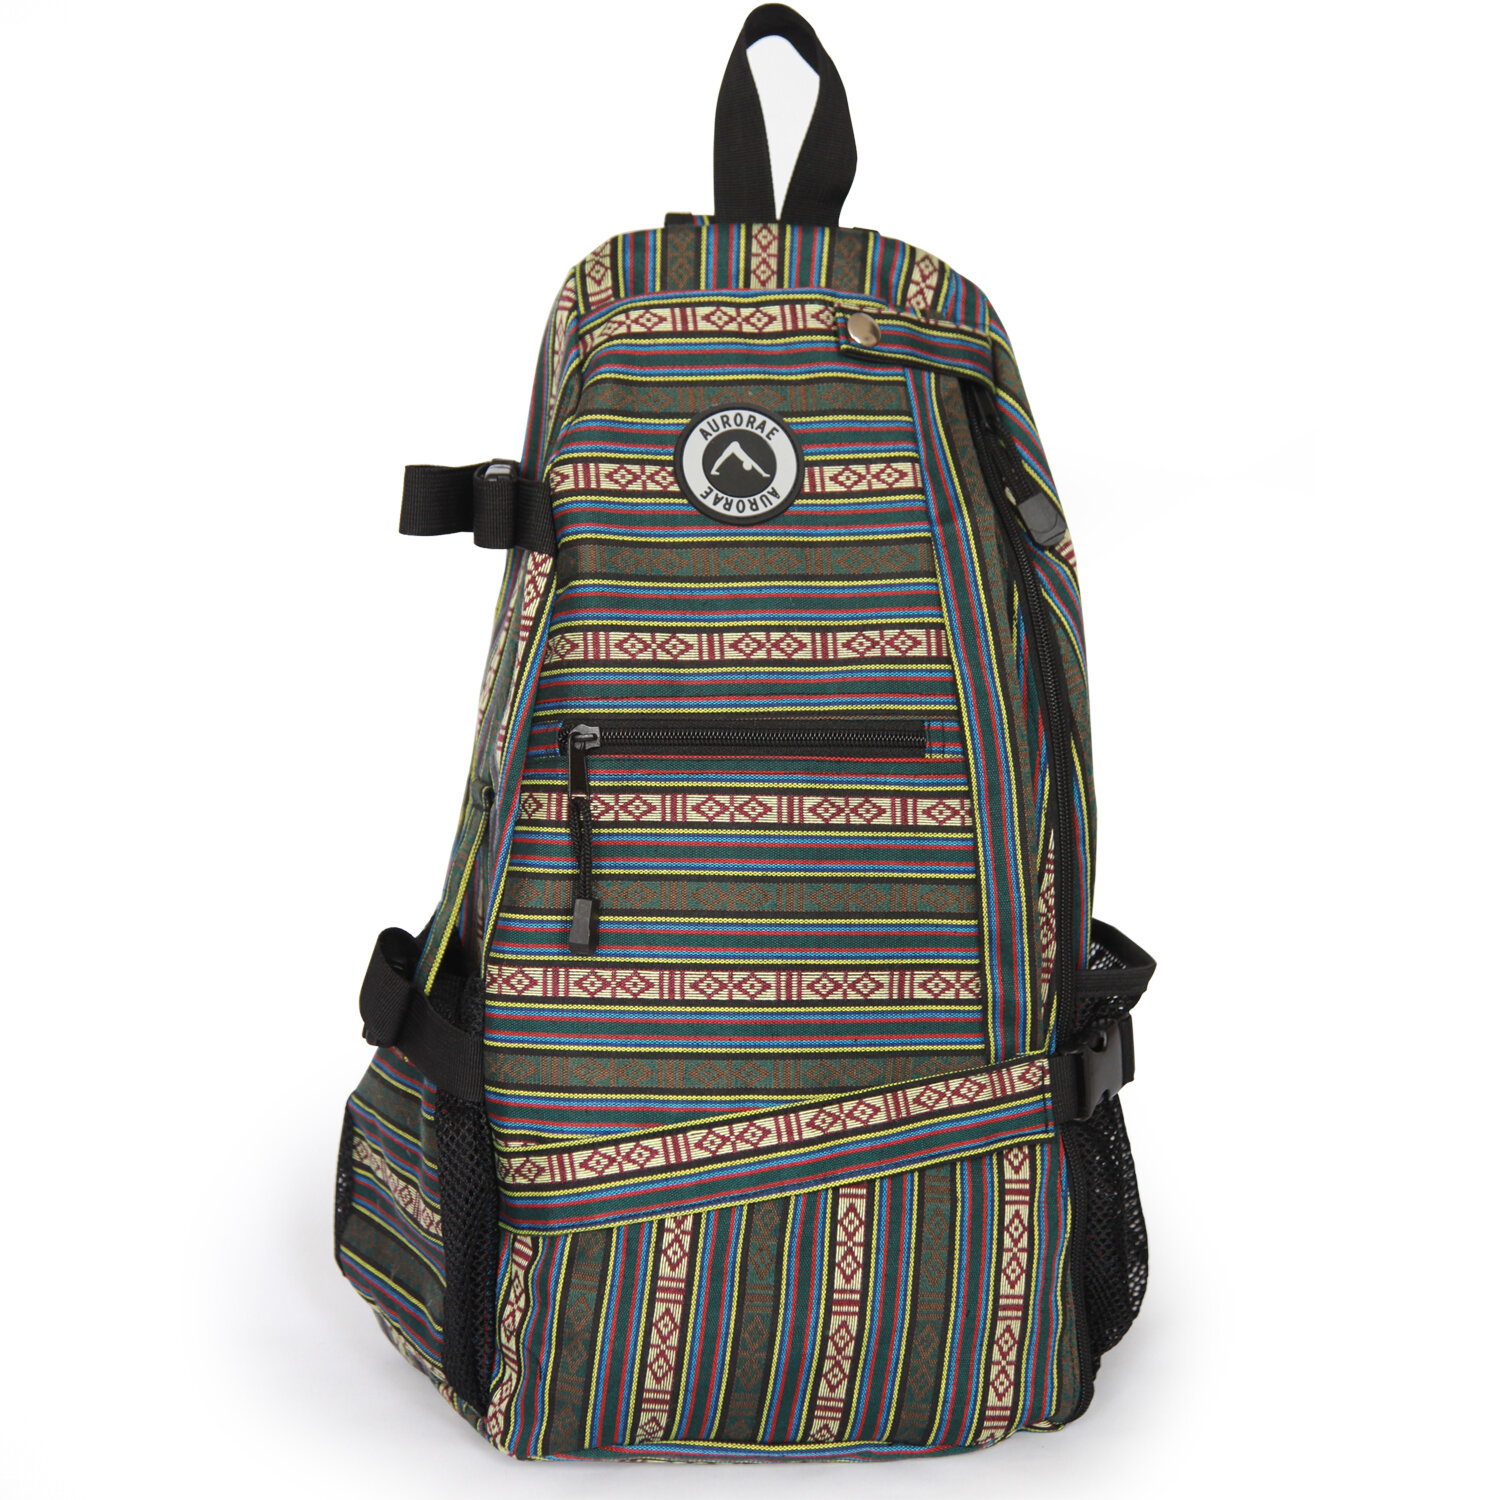 AY-BackpackPattern-1500-30.jpg